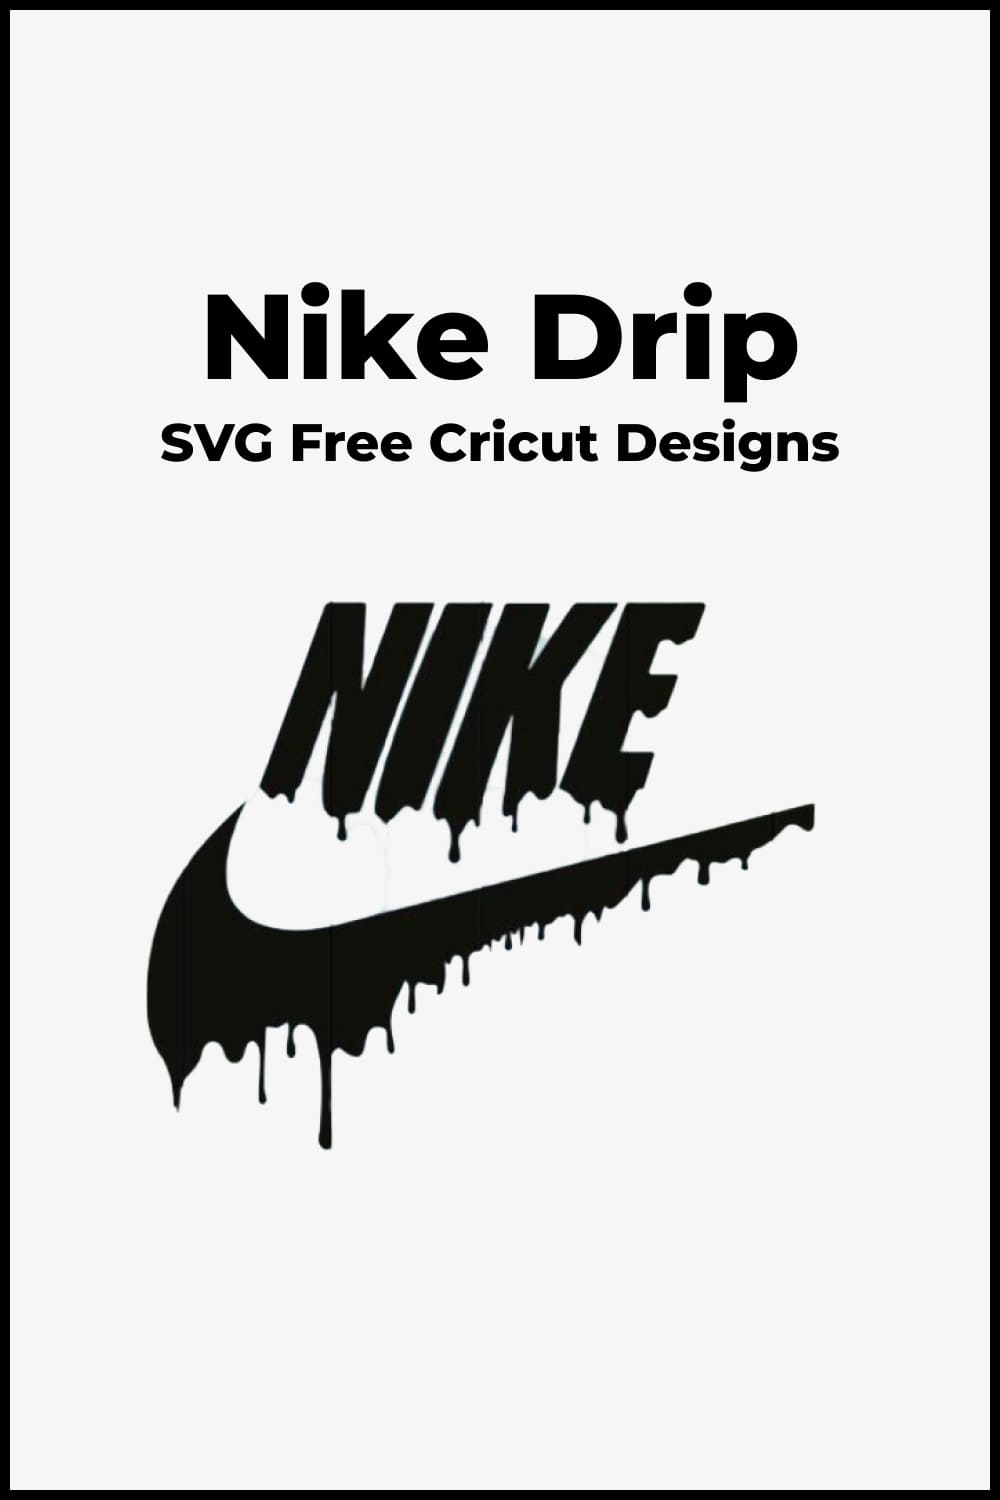 Nike 4 Logo Vector SVG Icon - SVG Repo